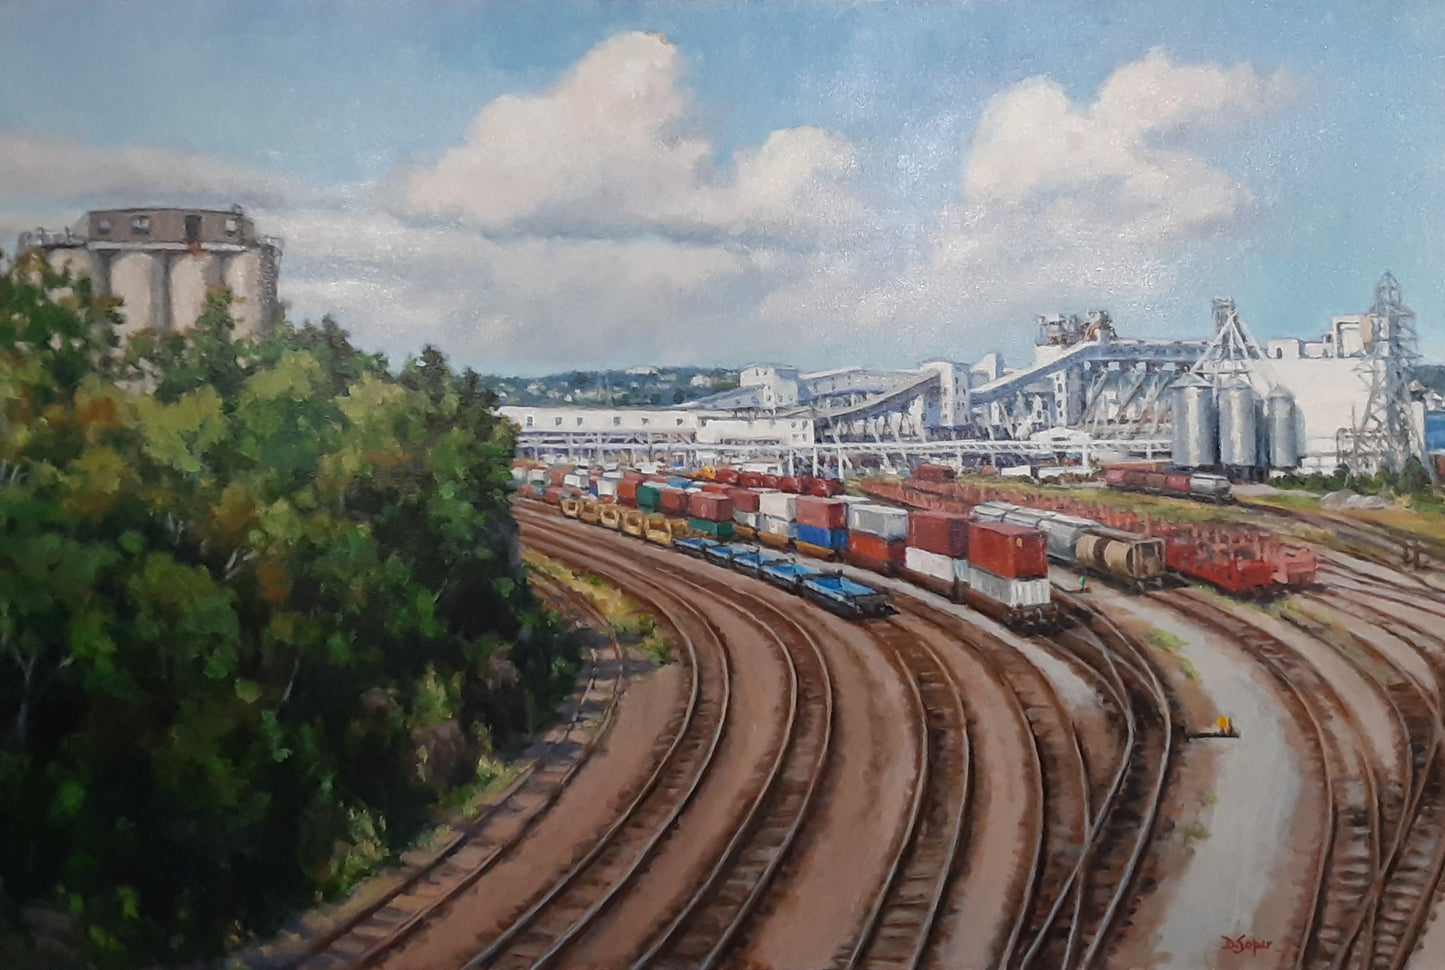 Halifax Trainyard